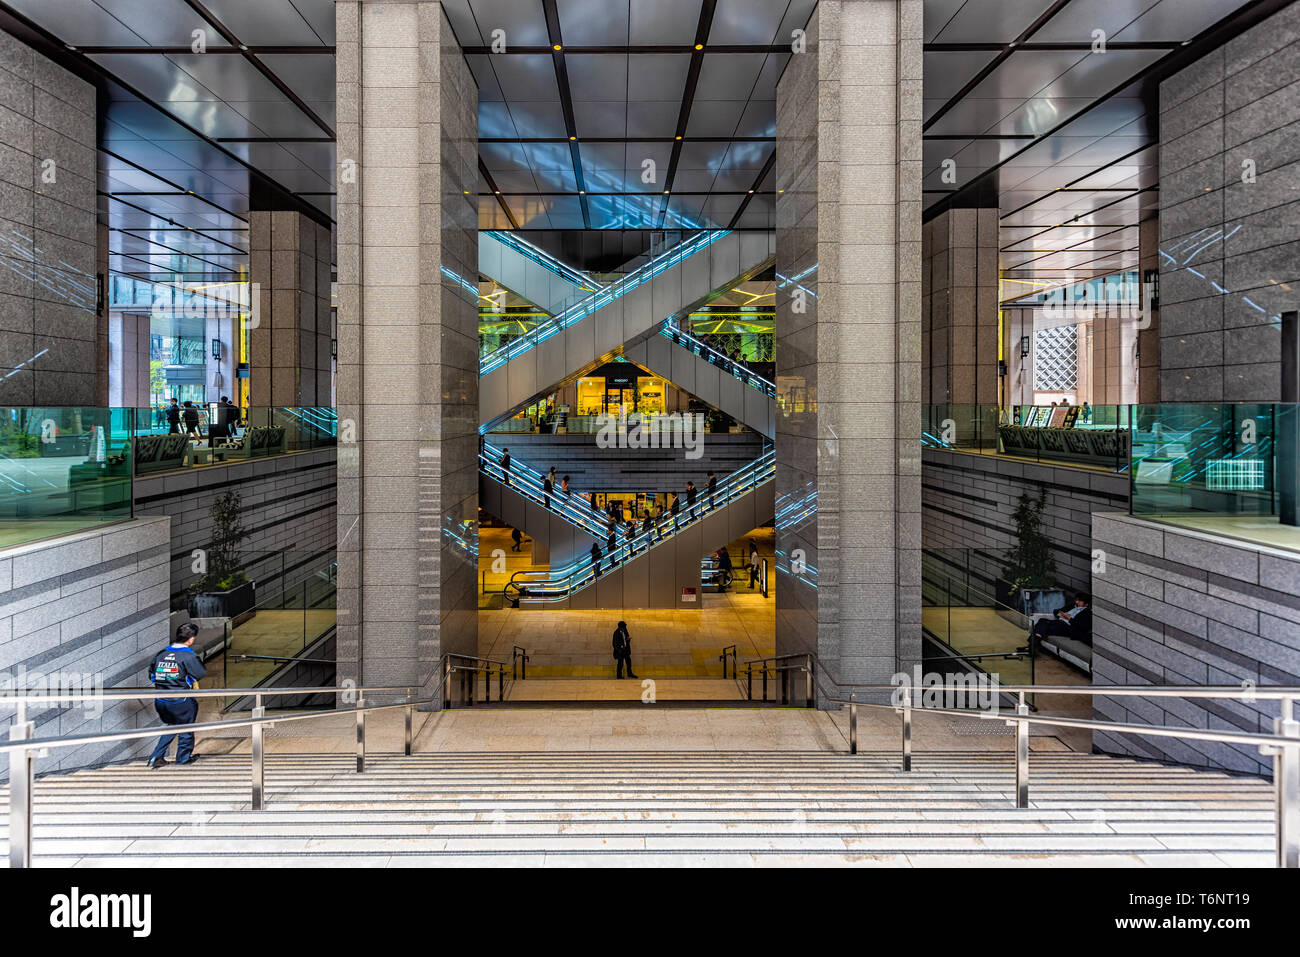 Tokyo, Giappone - 1 aprile 2019: Kyobashi Edopuland moderno centro affari edificio con architettura futuristica entrata di scale e scale mobili Foto Stock